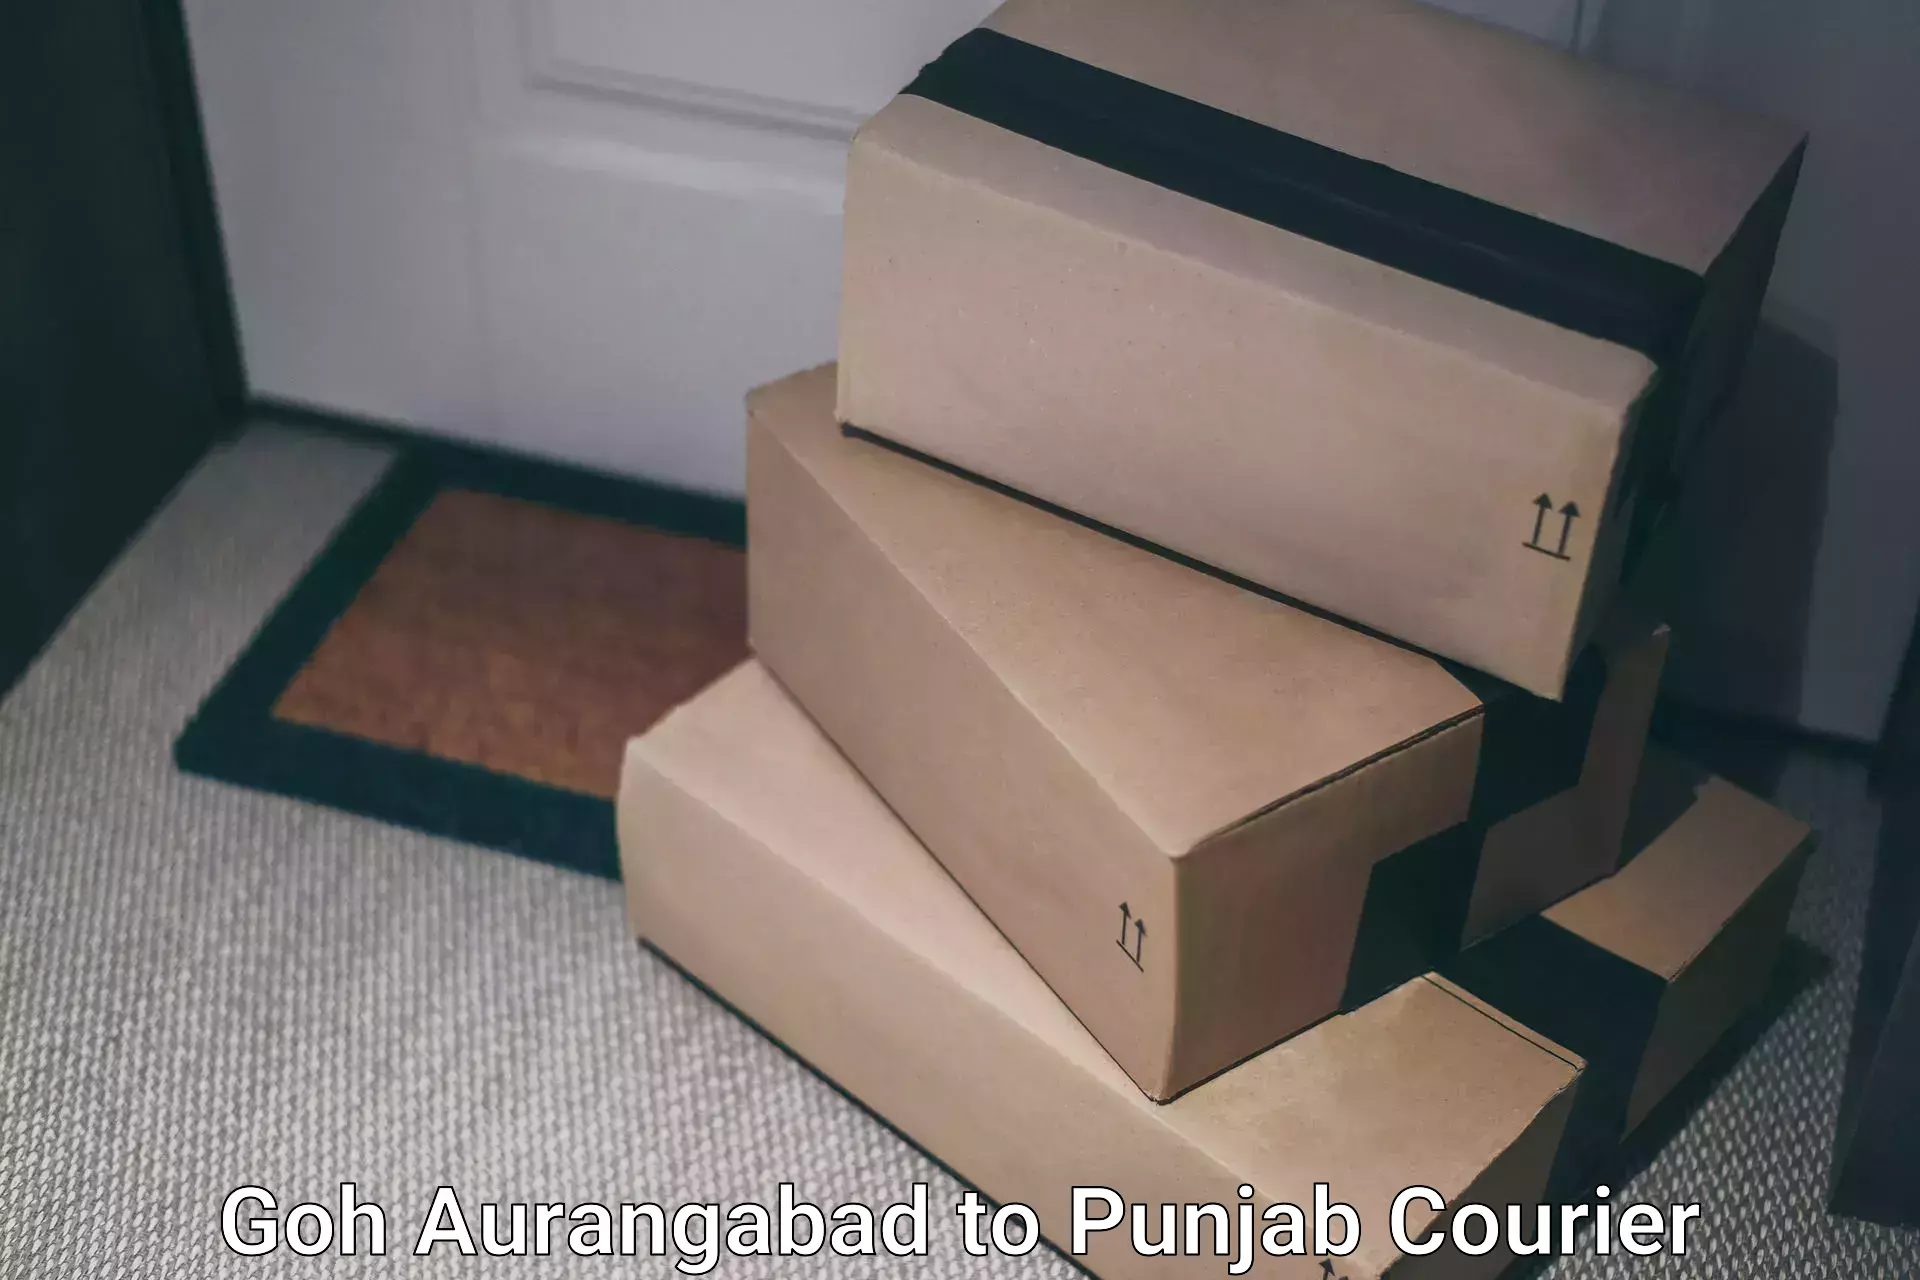 Easy access courier services Goh Aurangabad to Punjab